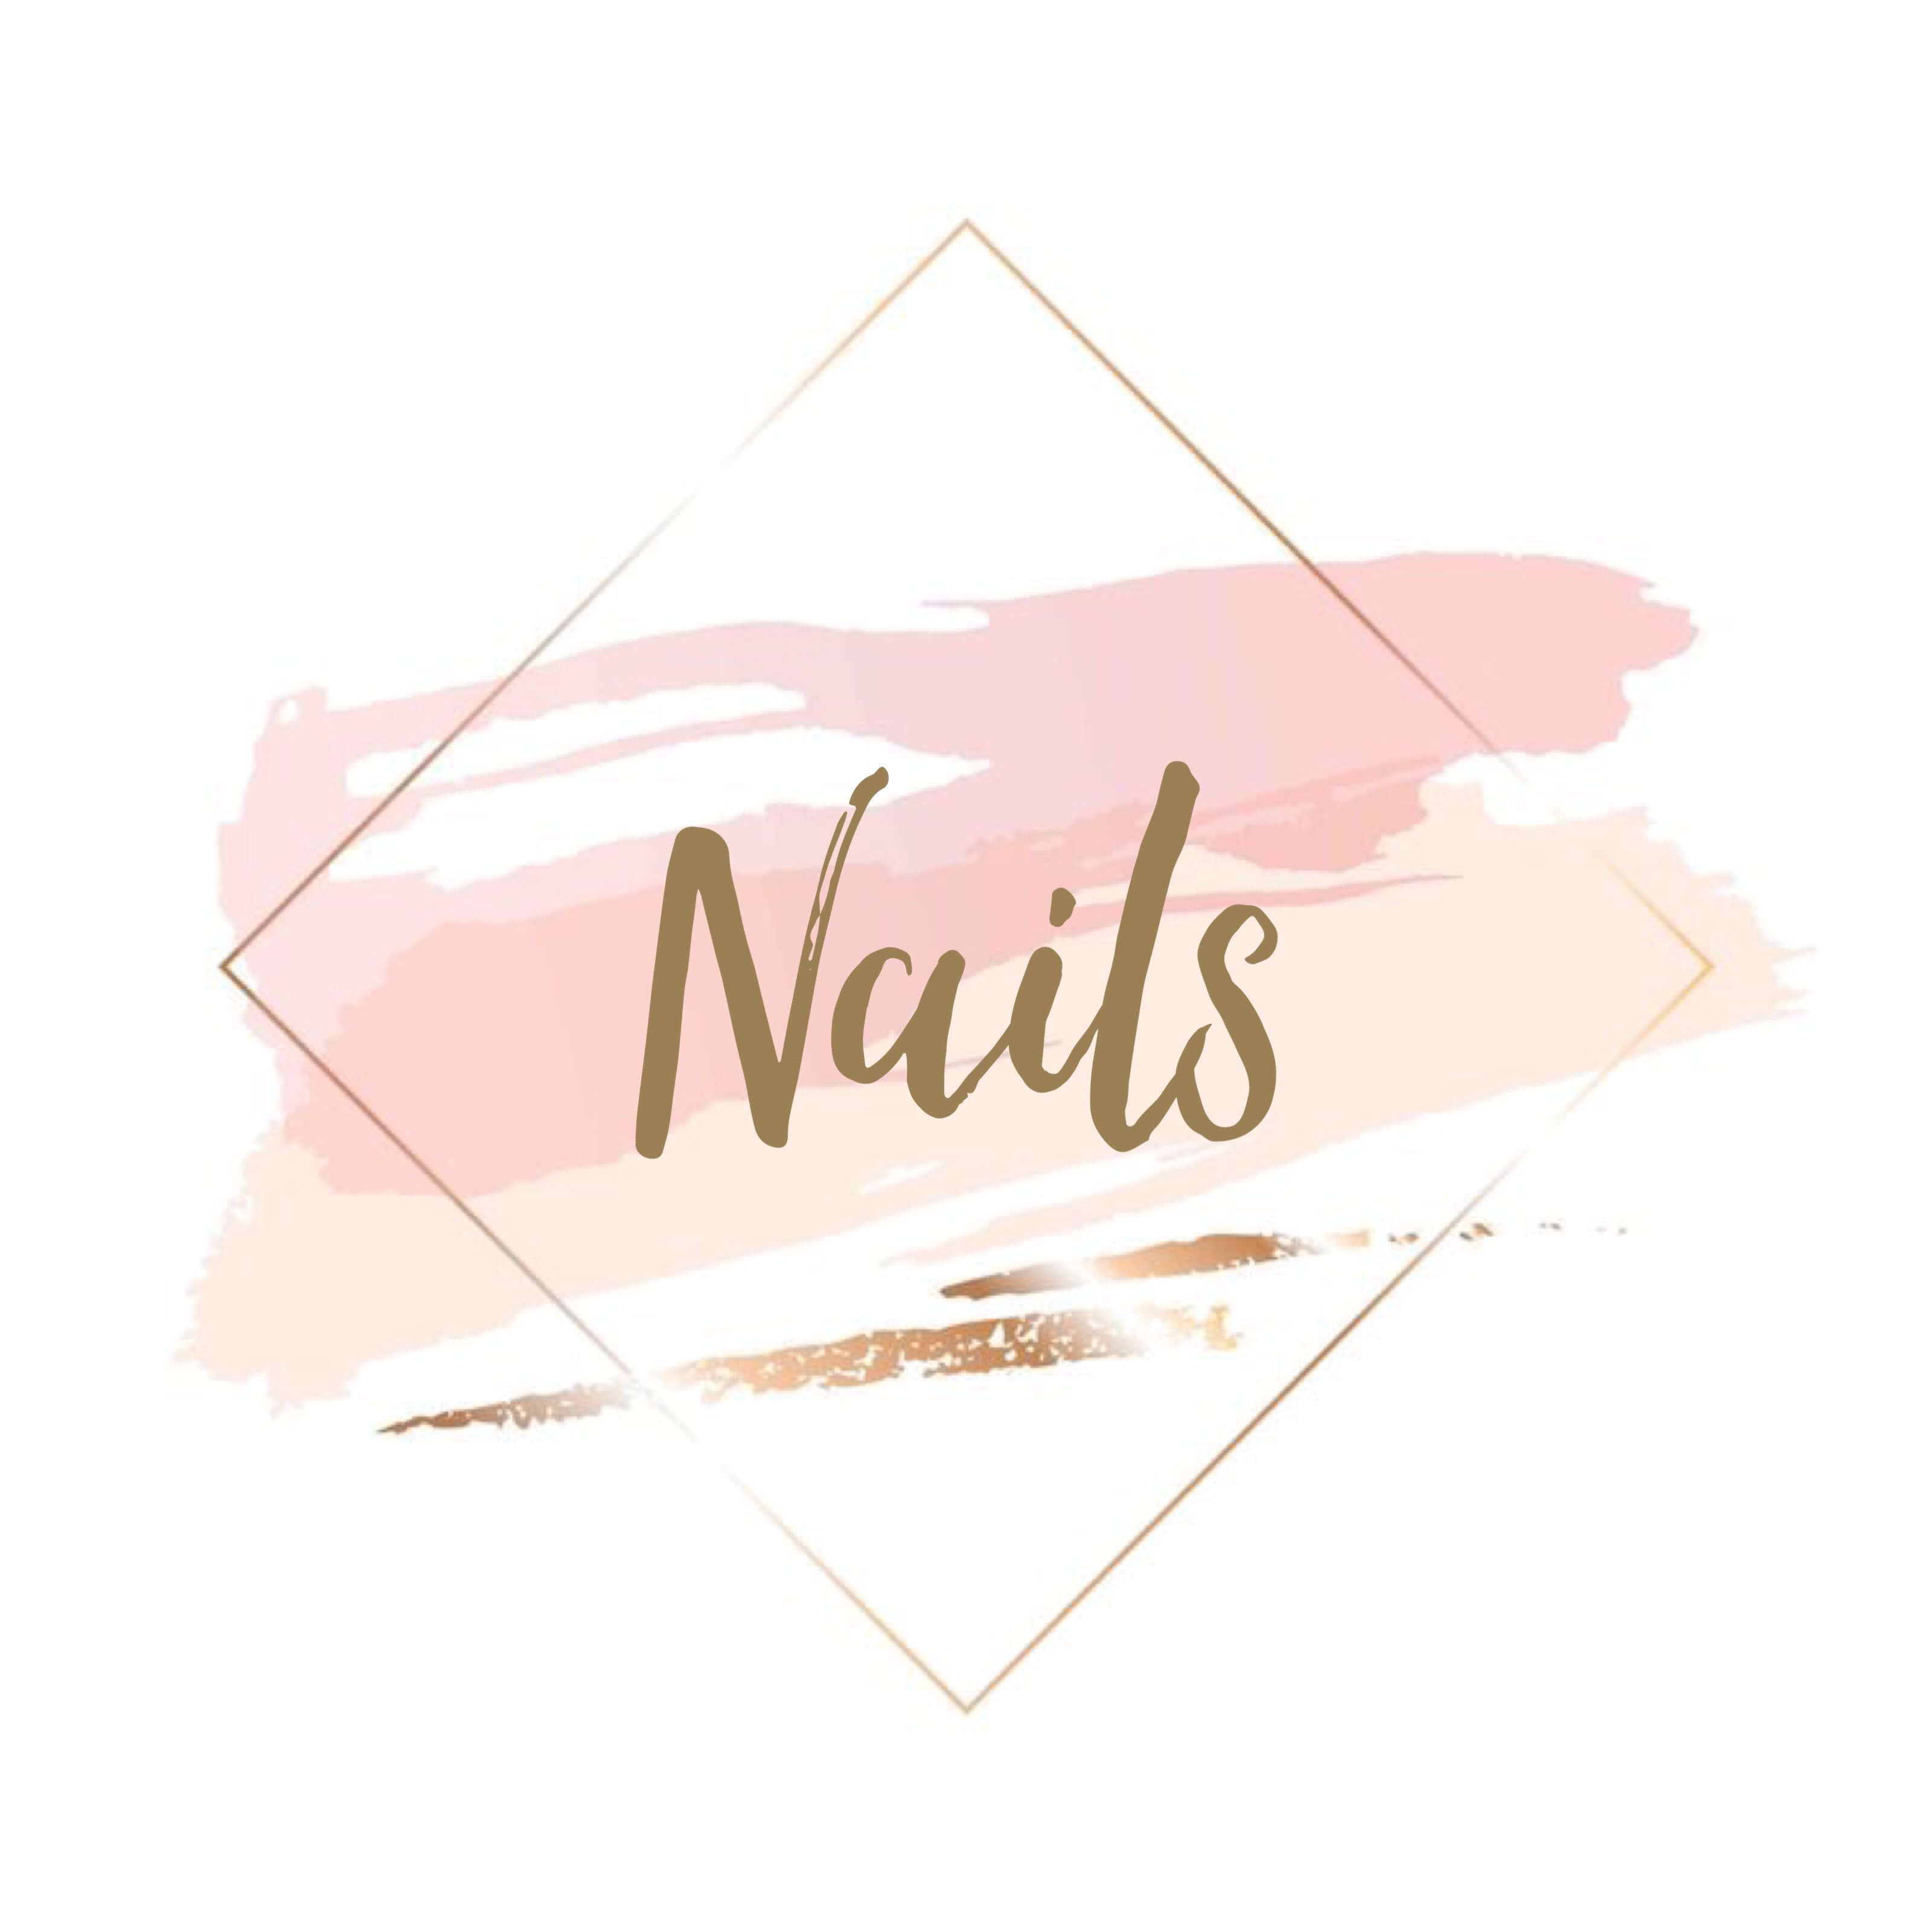 Logo nail đẹp chuyên nghiệp luôn là yếu tố quan trọng giúp cho một thương hiệu được khách hàng tin tưởng. Chính vì vậy, nhiều chủ salon đã sử dụng mẫu logo nail đẹp để thể hiện chất lượng dịch vụ và chuyên nghiệp của mình. Để tìm kiếm mẫu logo tuyệt đẹp cho salon của mình, hãy ghé thăm trang web của chúng tôi.